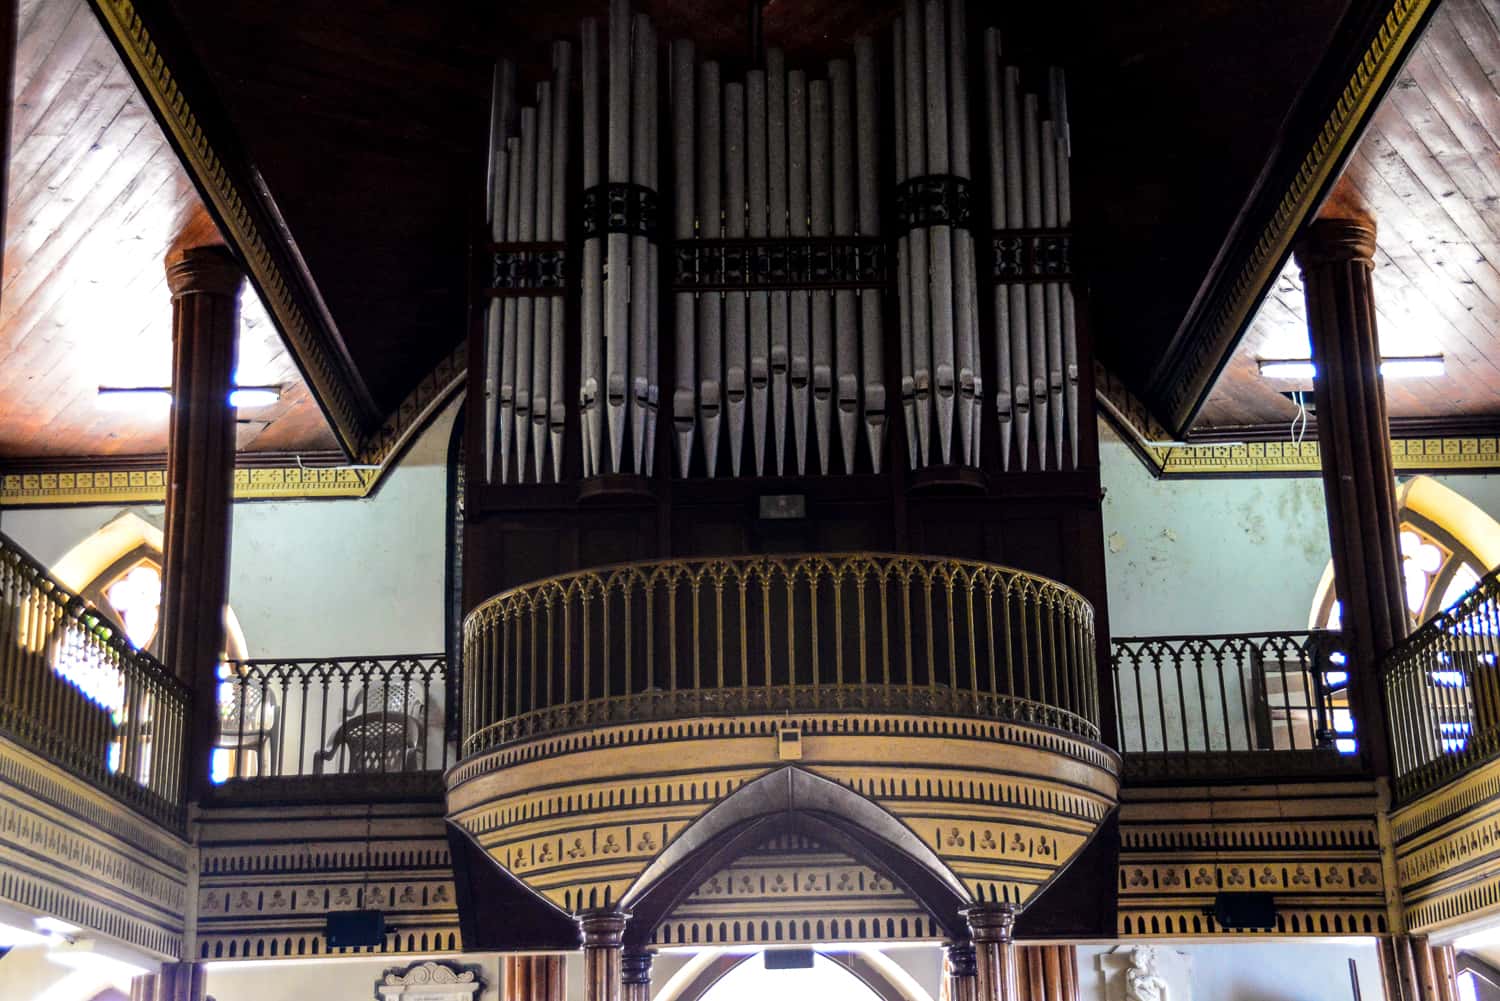 Beautiful organ ...